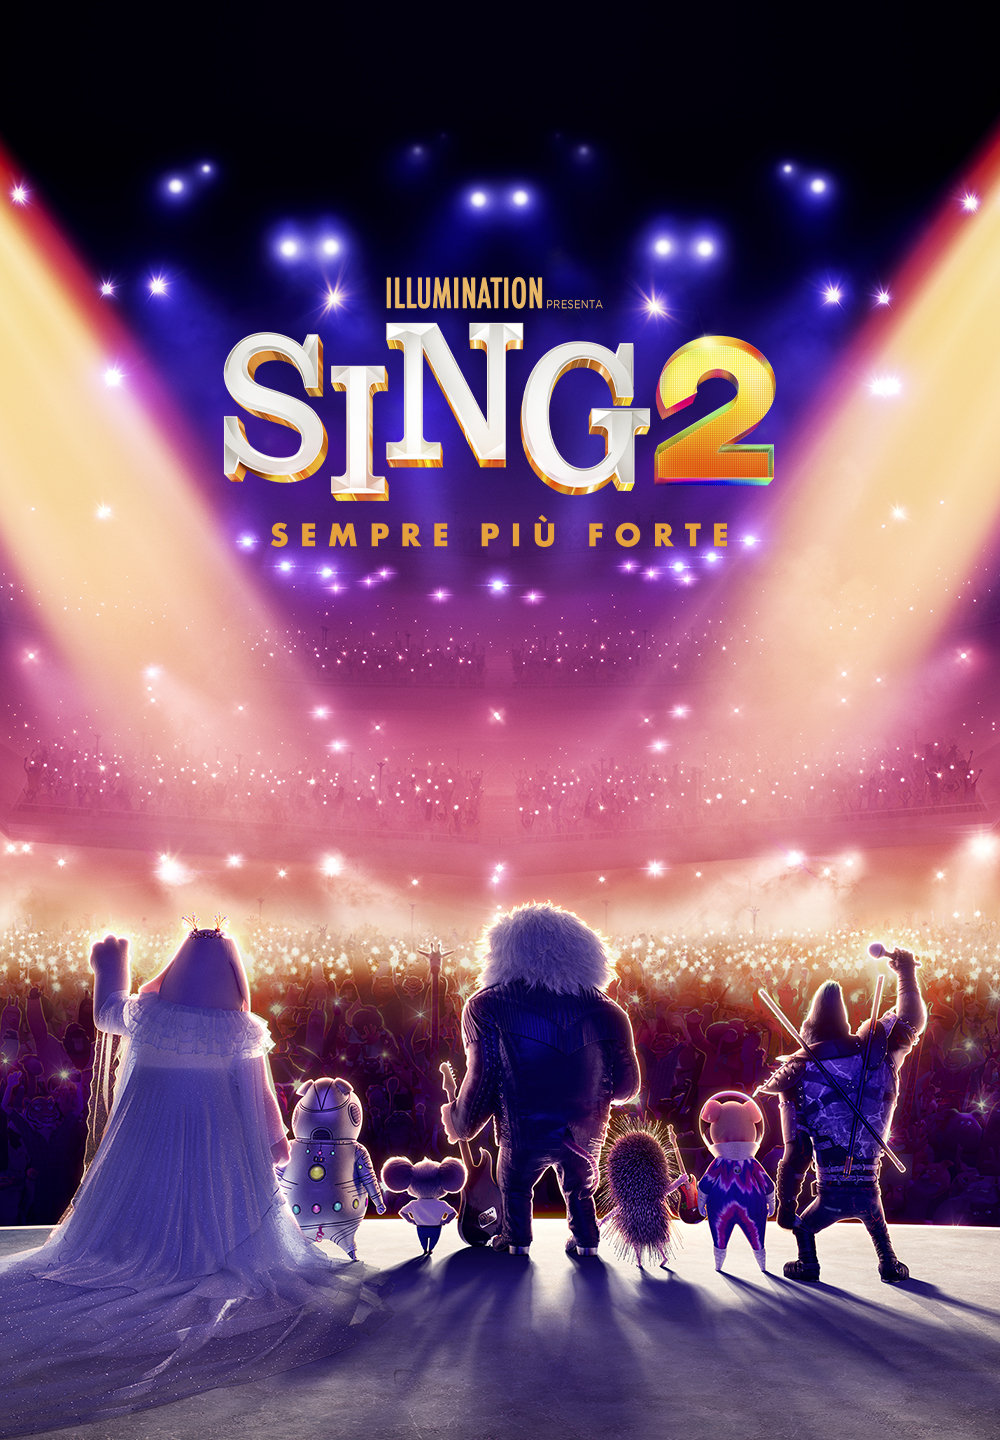 Sing 2: Sempre più forte [HD] (2021)